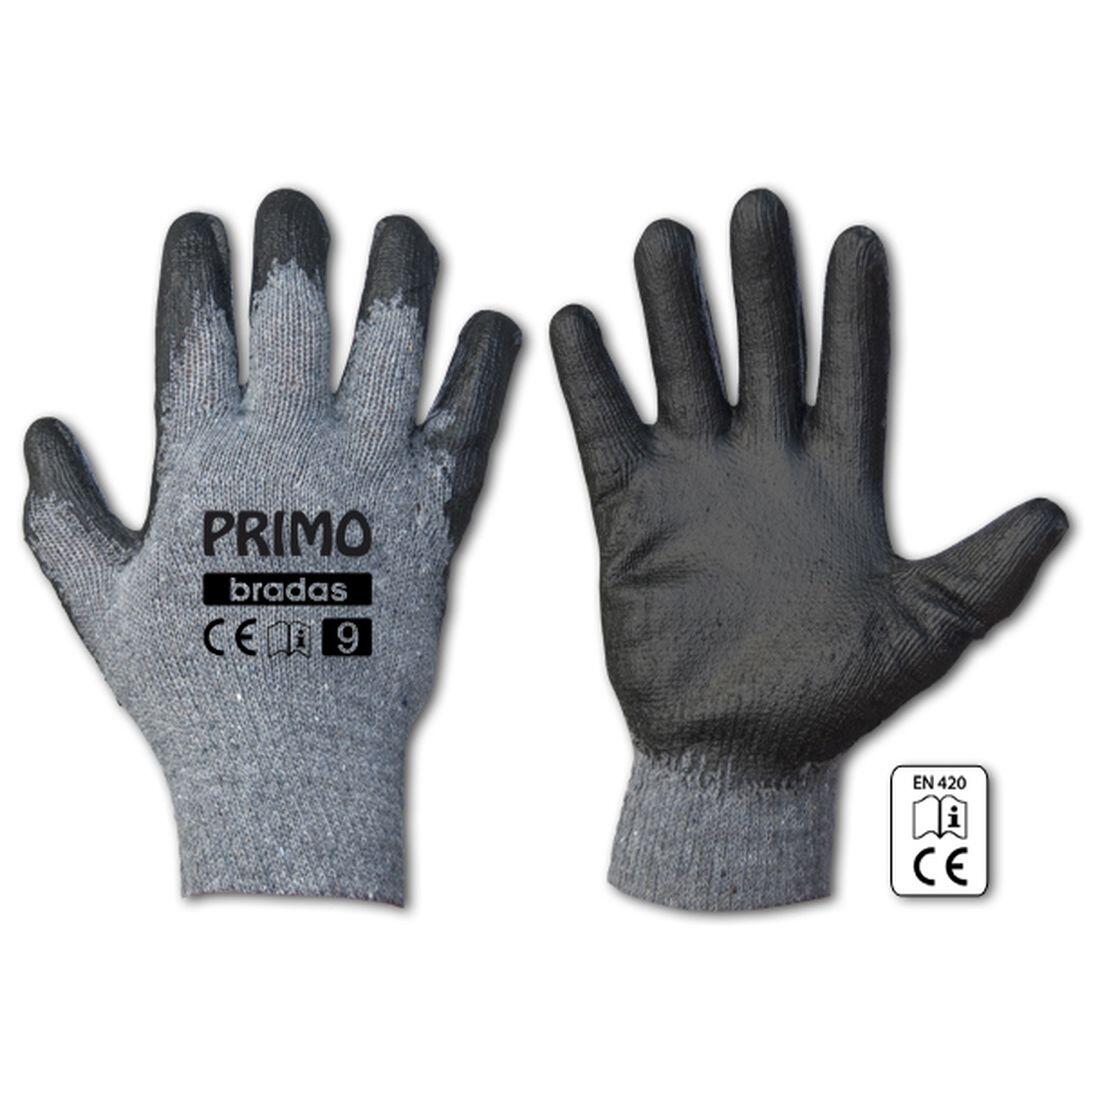 rukavice PRIMO latex  9 0.07 Kg MAXMIX Sklad14 715683 333